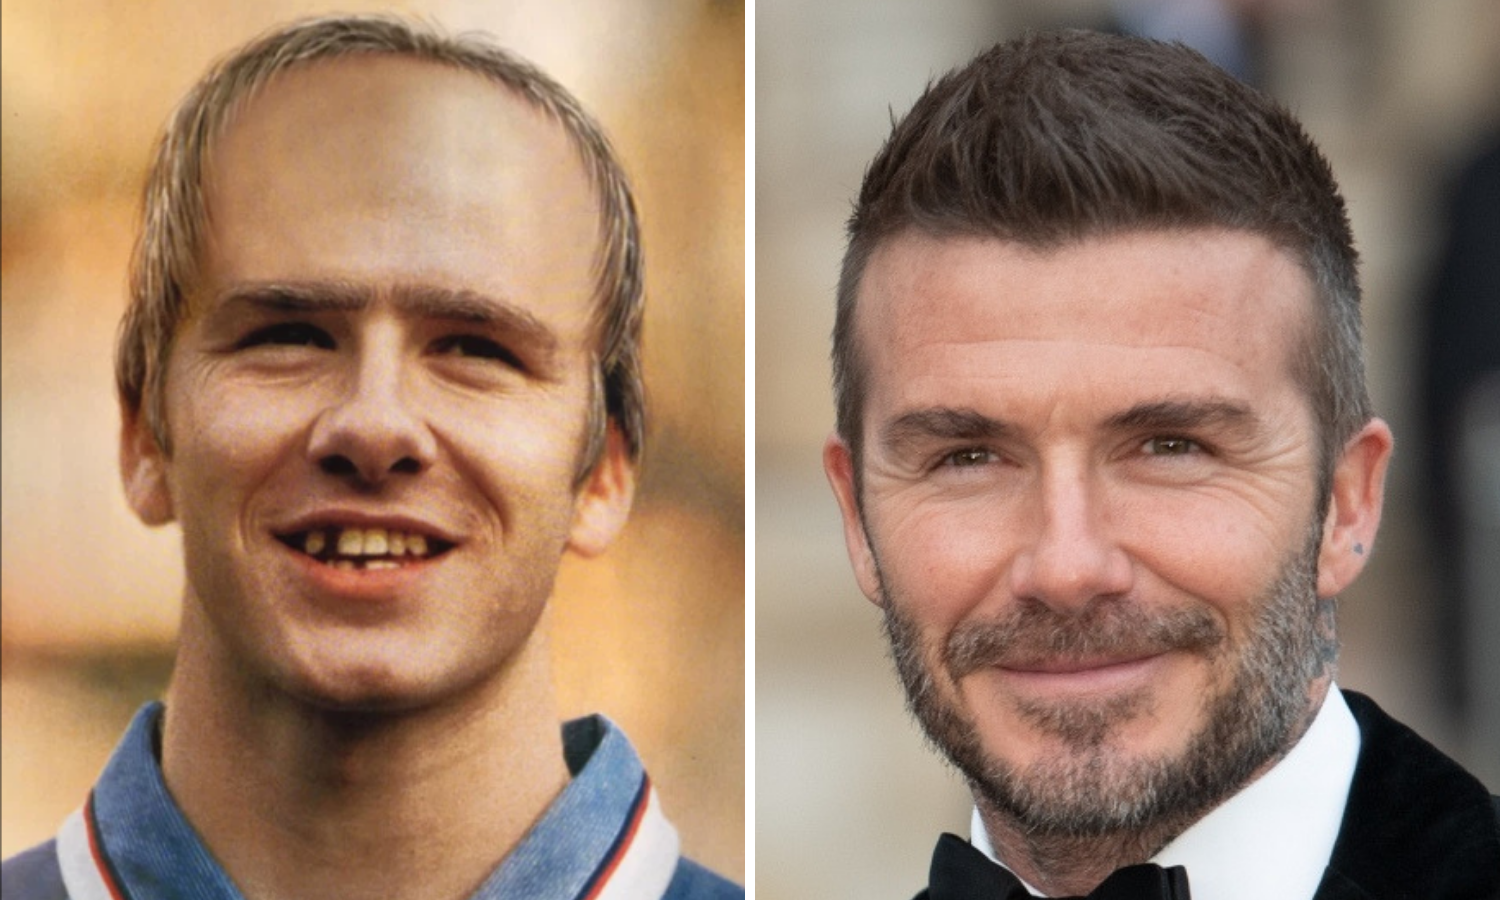 Beckhamu su 1998. predvidjeli da će postati krezub i proćelav